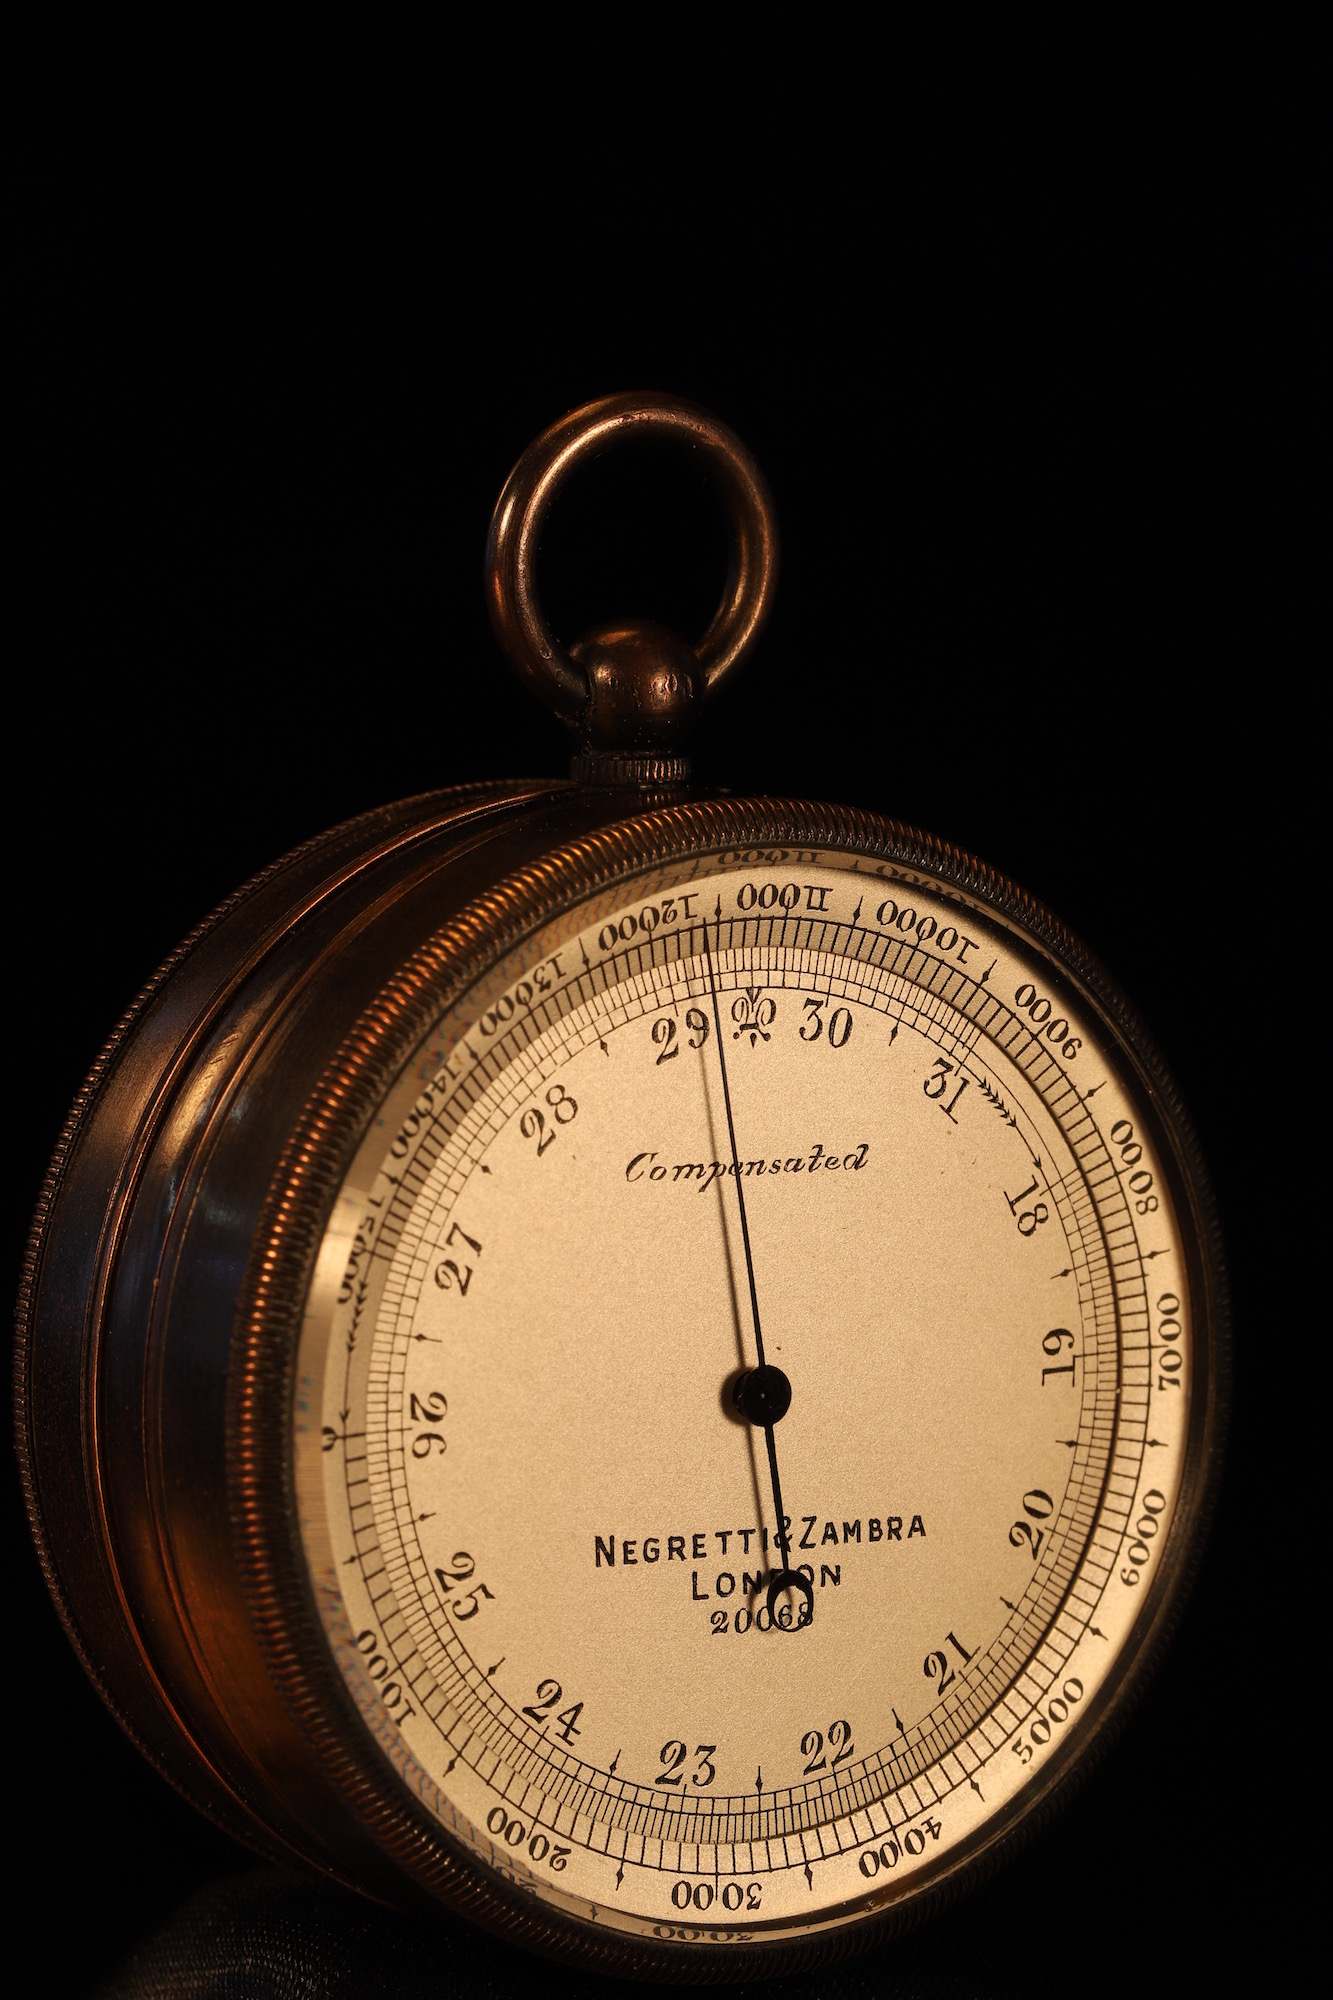 Image of Negretti & Zambra Pocket Barometer Compendium No 20068 c1905